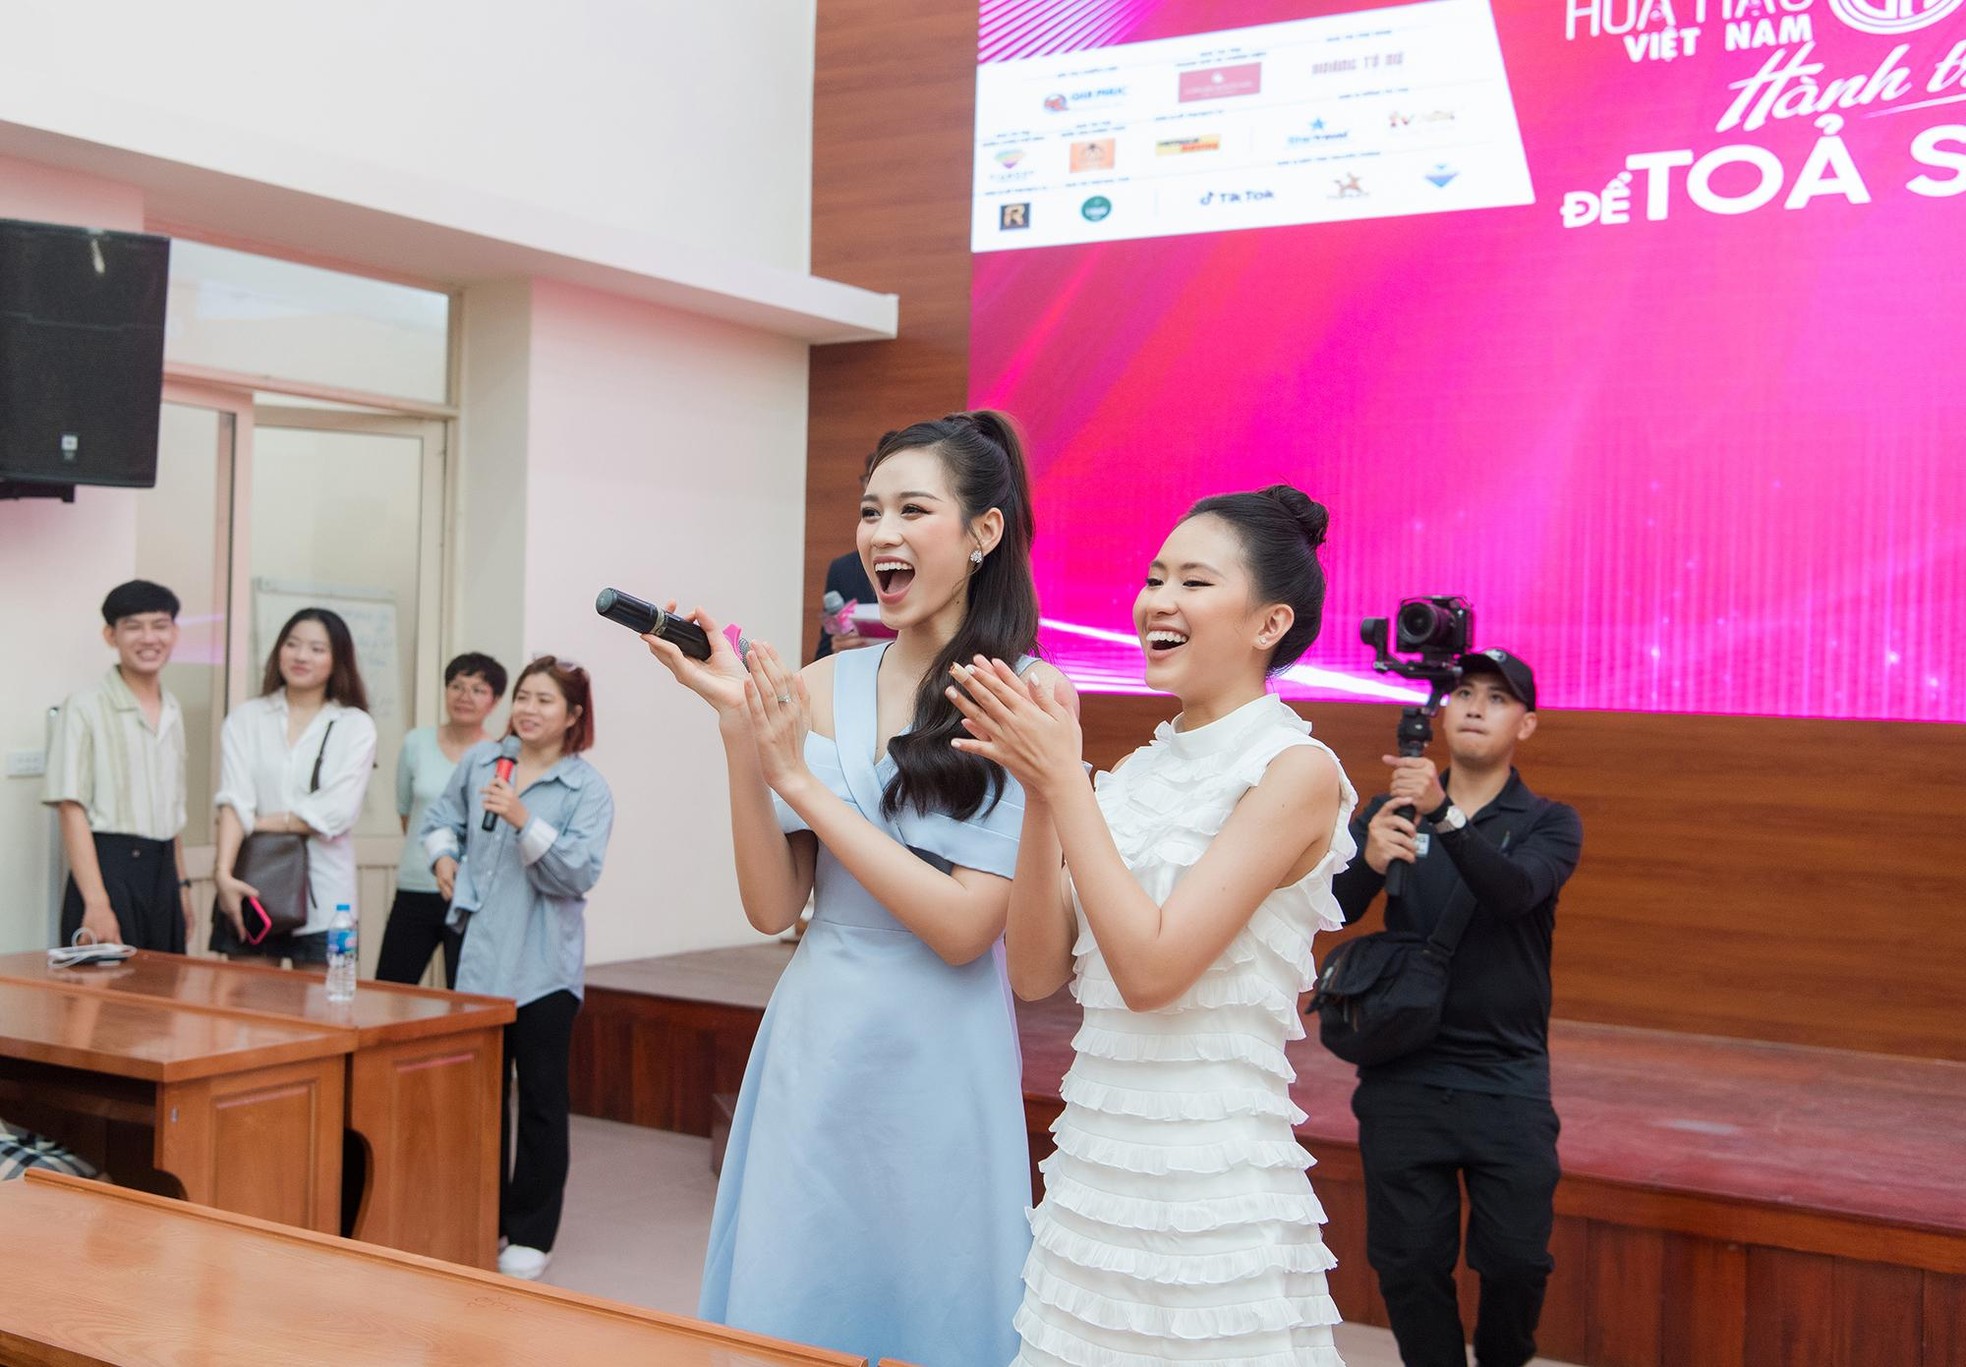 Đỗ Thị Hà catwalk trong buổi tuyển sinh Hoa hậu Việt Nam 2022 - Ảnh 8.